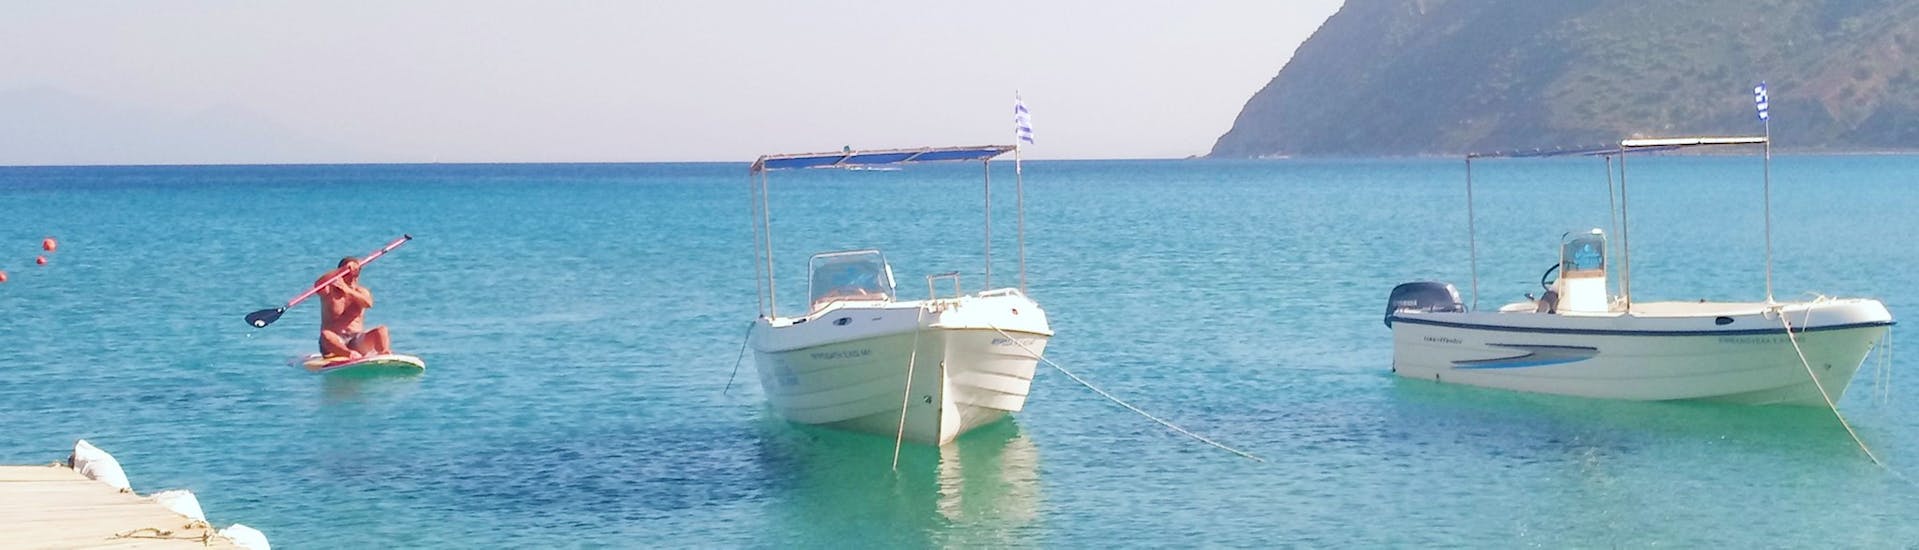 Vue lors de la Location de stand up paddle sur le plage de Kefalos avec Water Club Poseidon Kos.